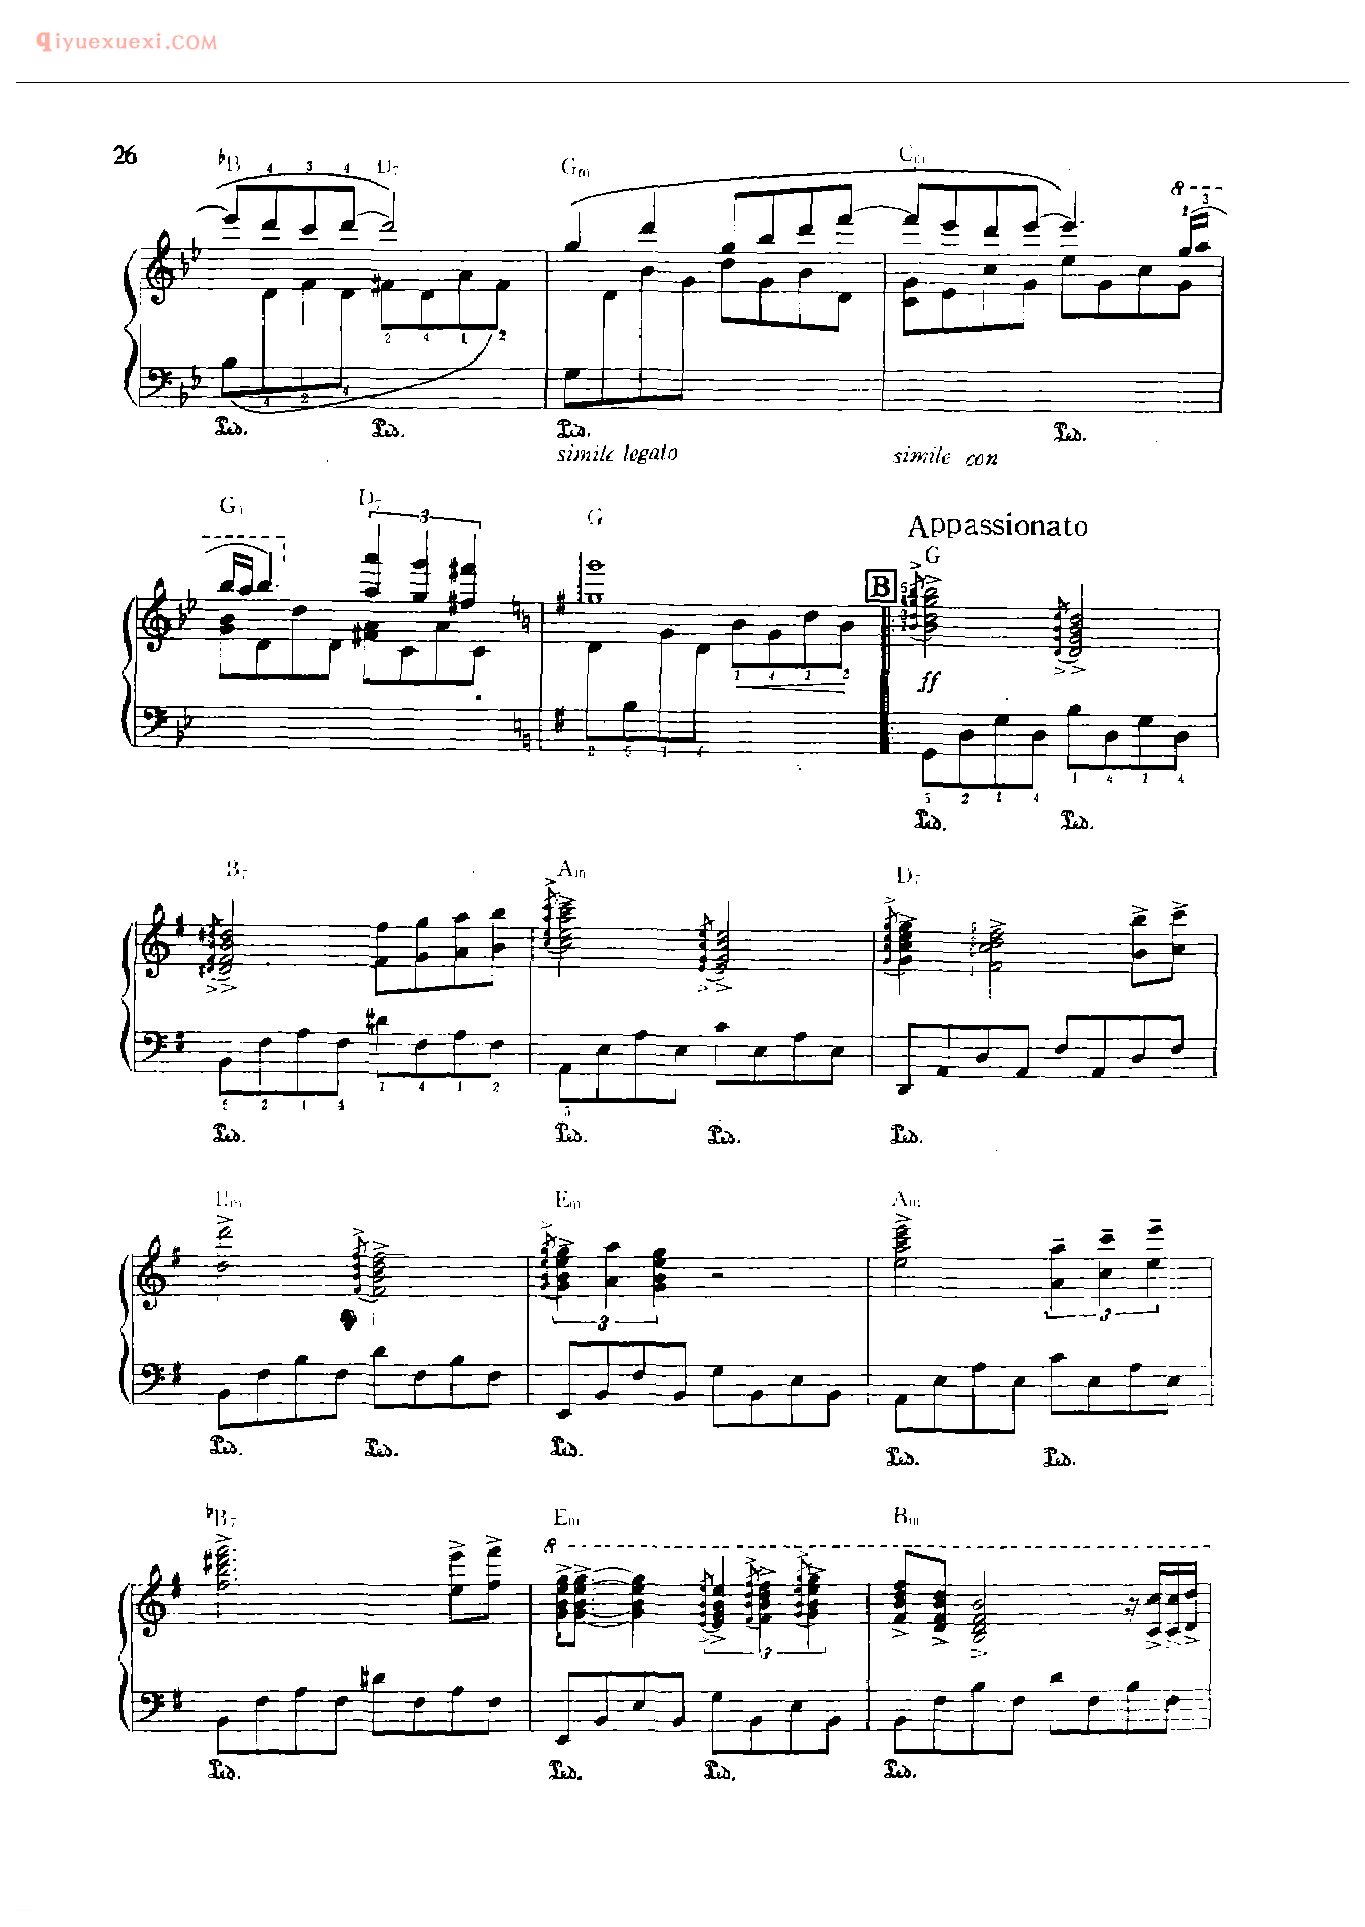 理查德克莱德曼钢琴曲_星空的旋律_保罗·德·森纳维尔、奥利弟弗埃–图圣曲